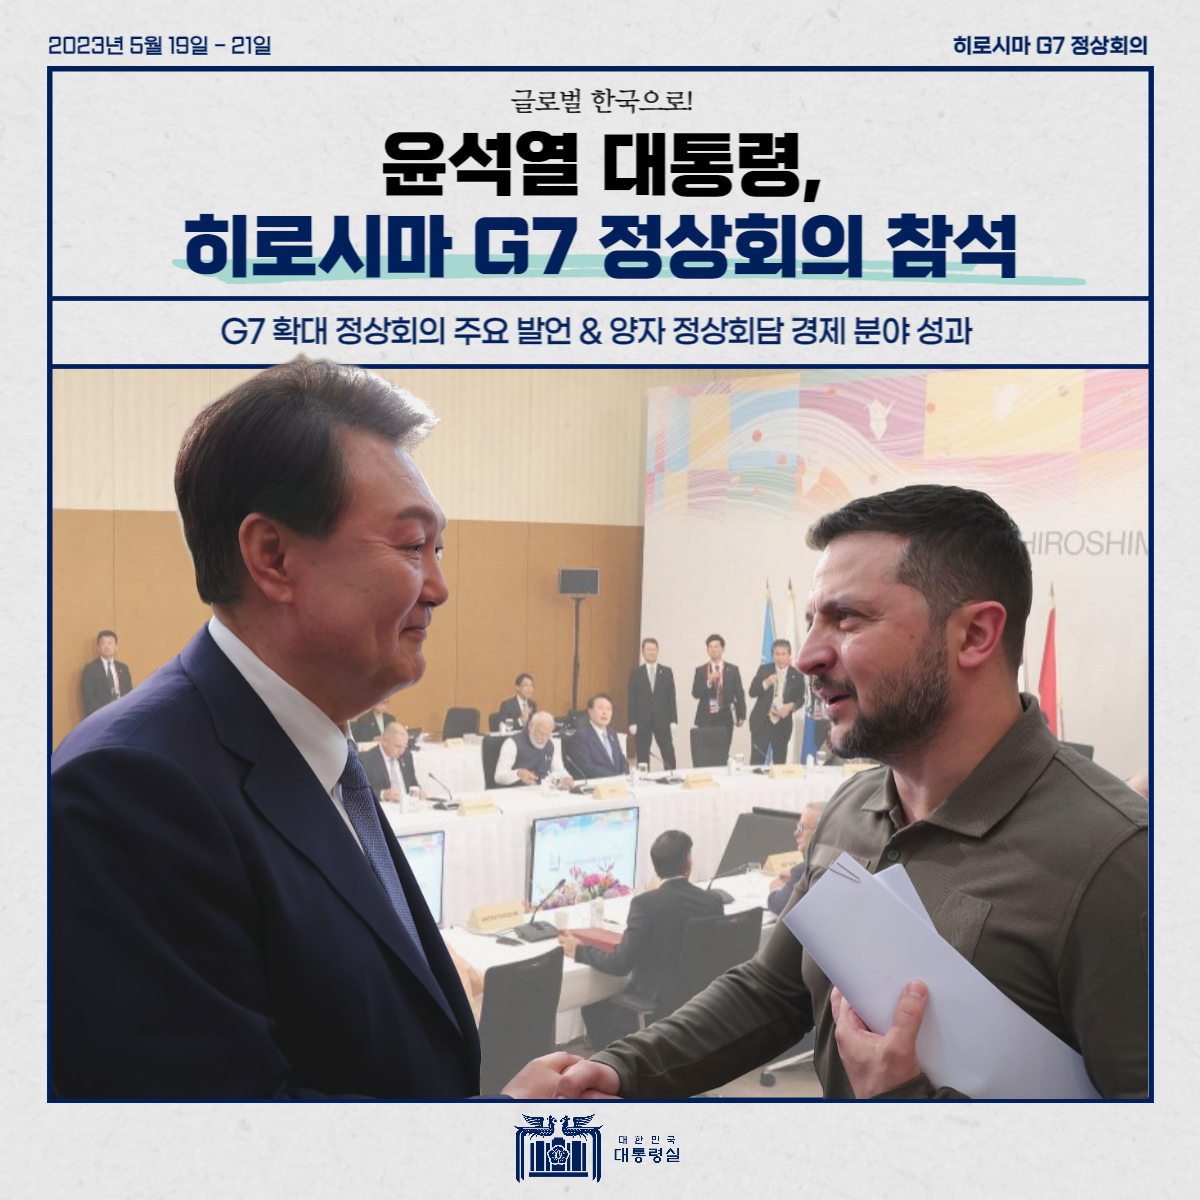 글로벌 한국으로! 윤석열 대통령, 히로시마 G7 정상회의 참석! 썸네일